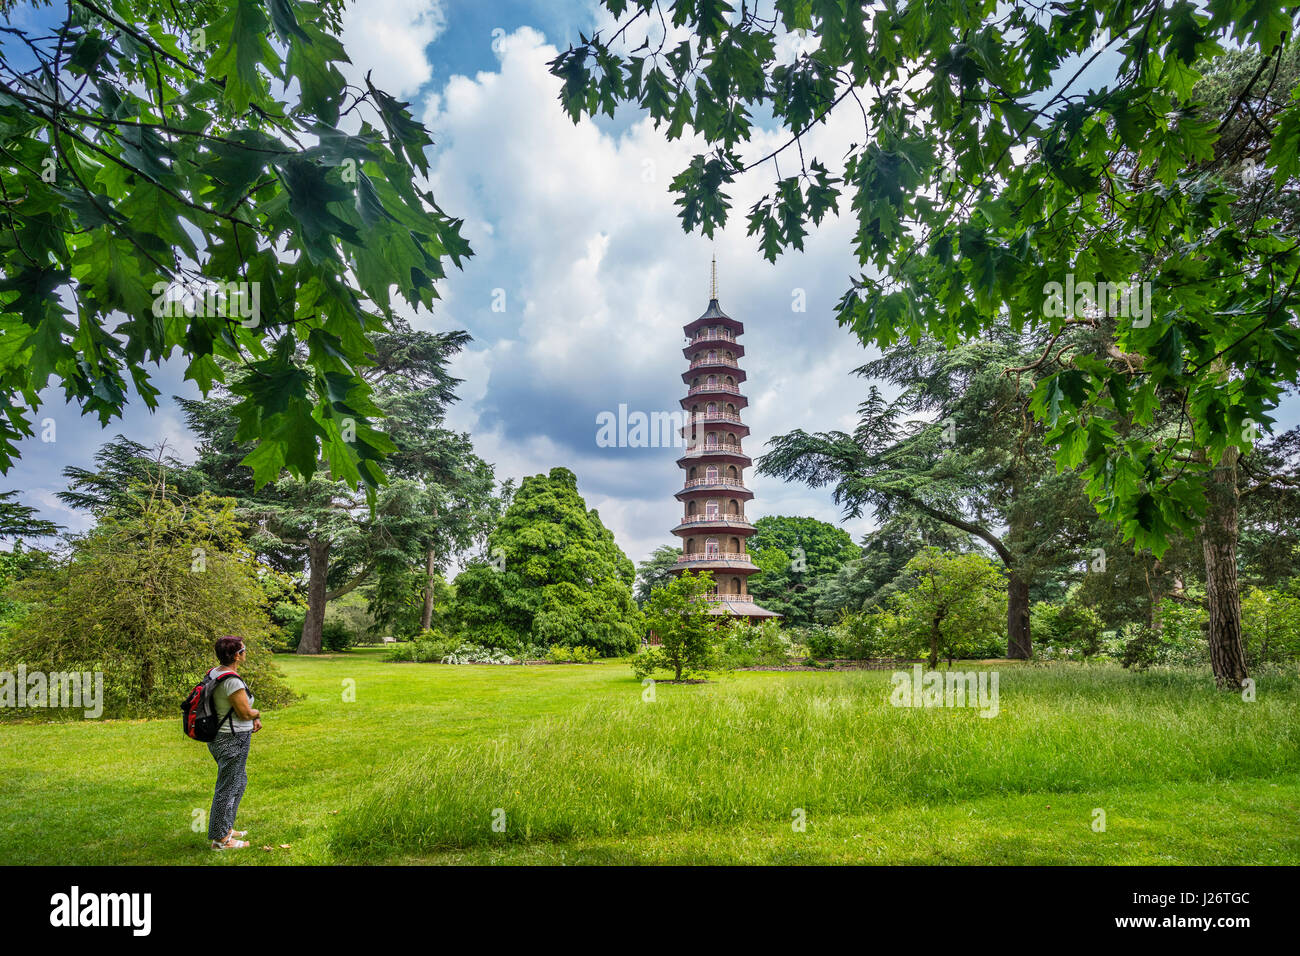 Regno Unito, Inghilterra, Kew Gardens in London Borough of Richmond upon Thames, vista di dieci piani pagoda ottagonale Foto Stock